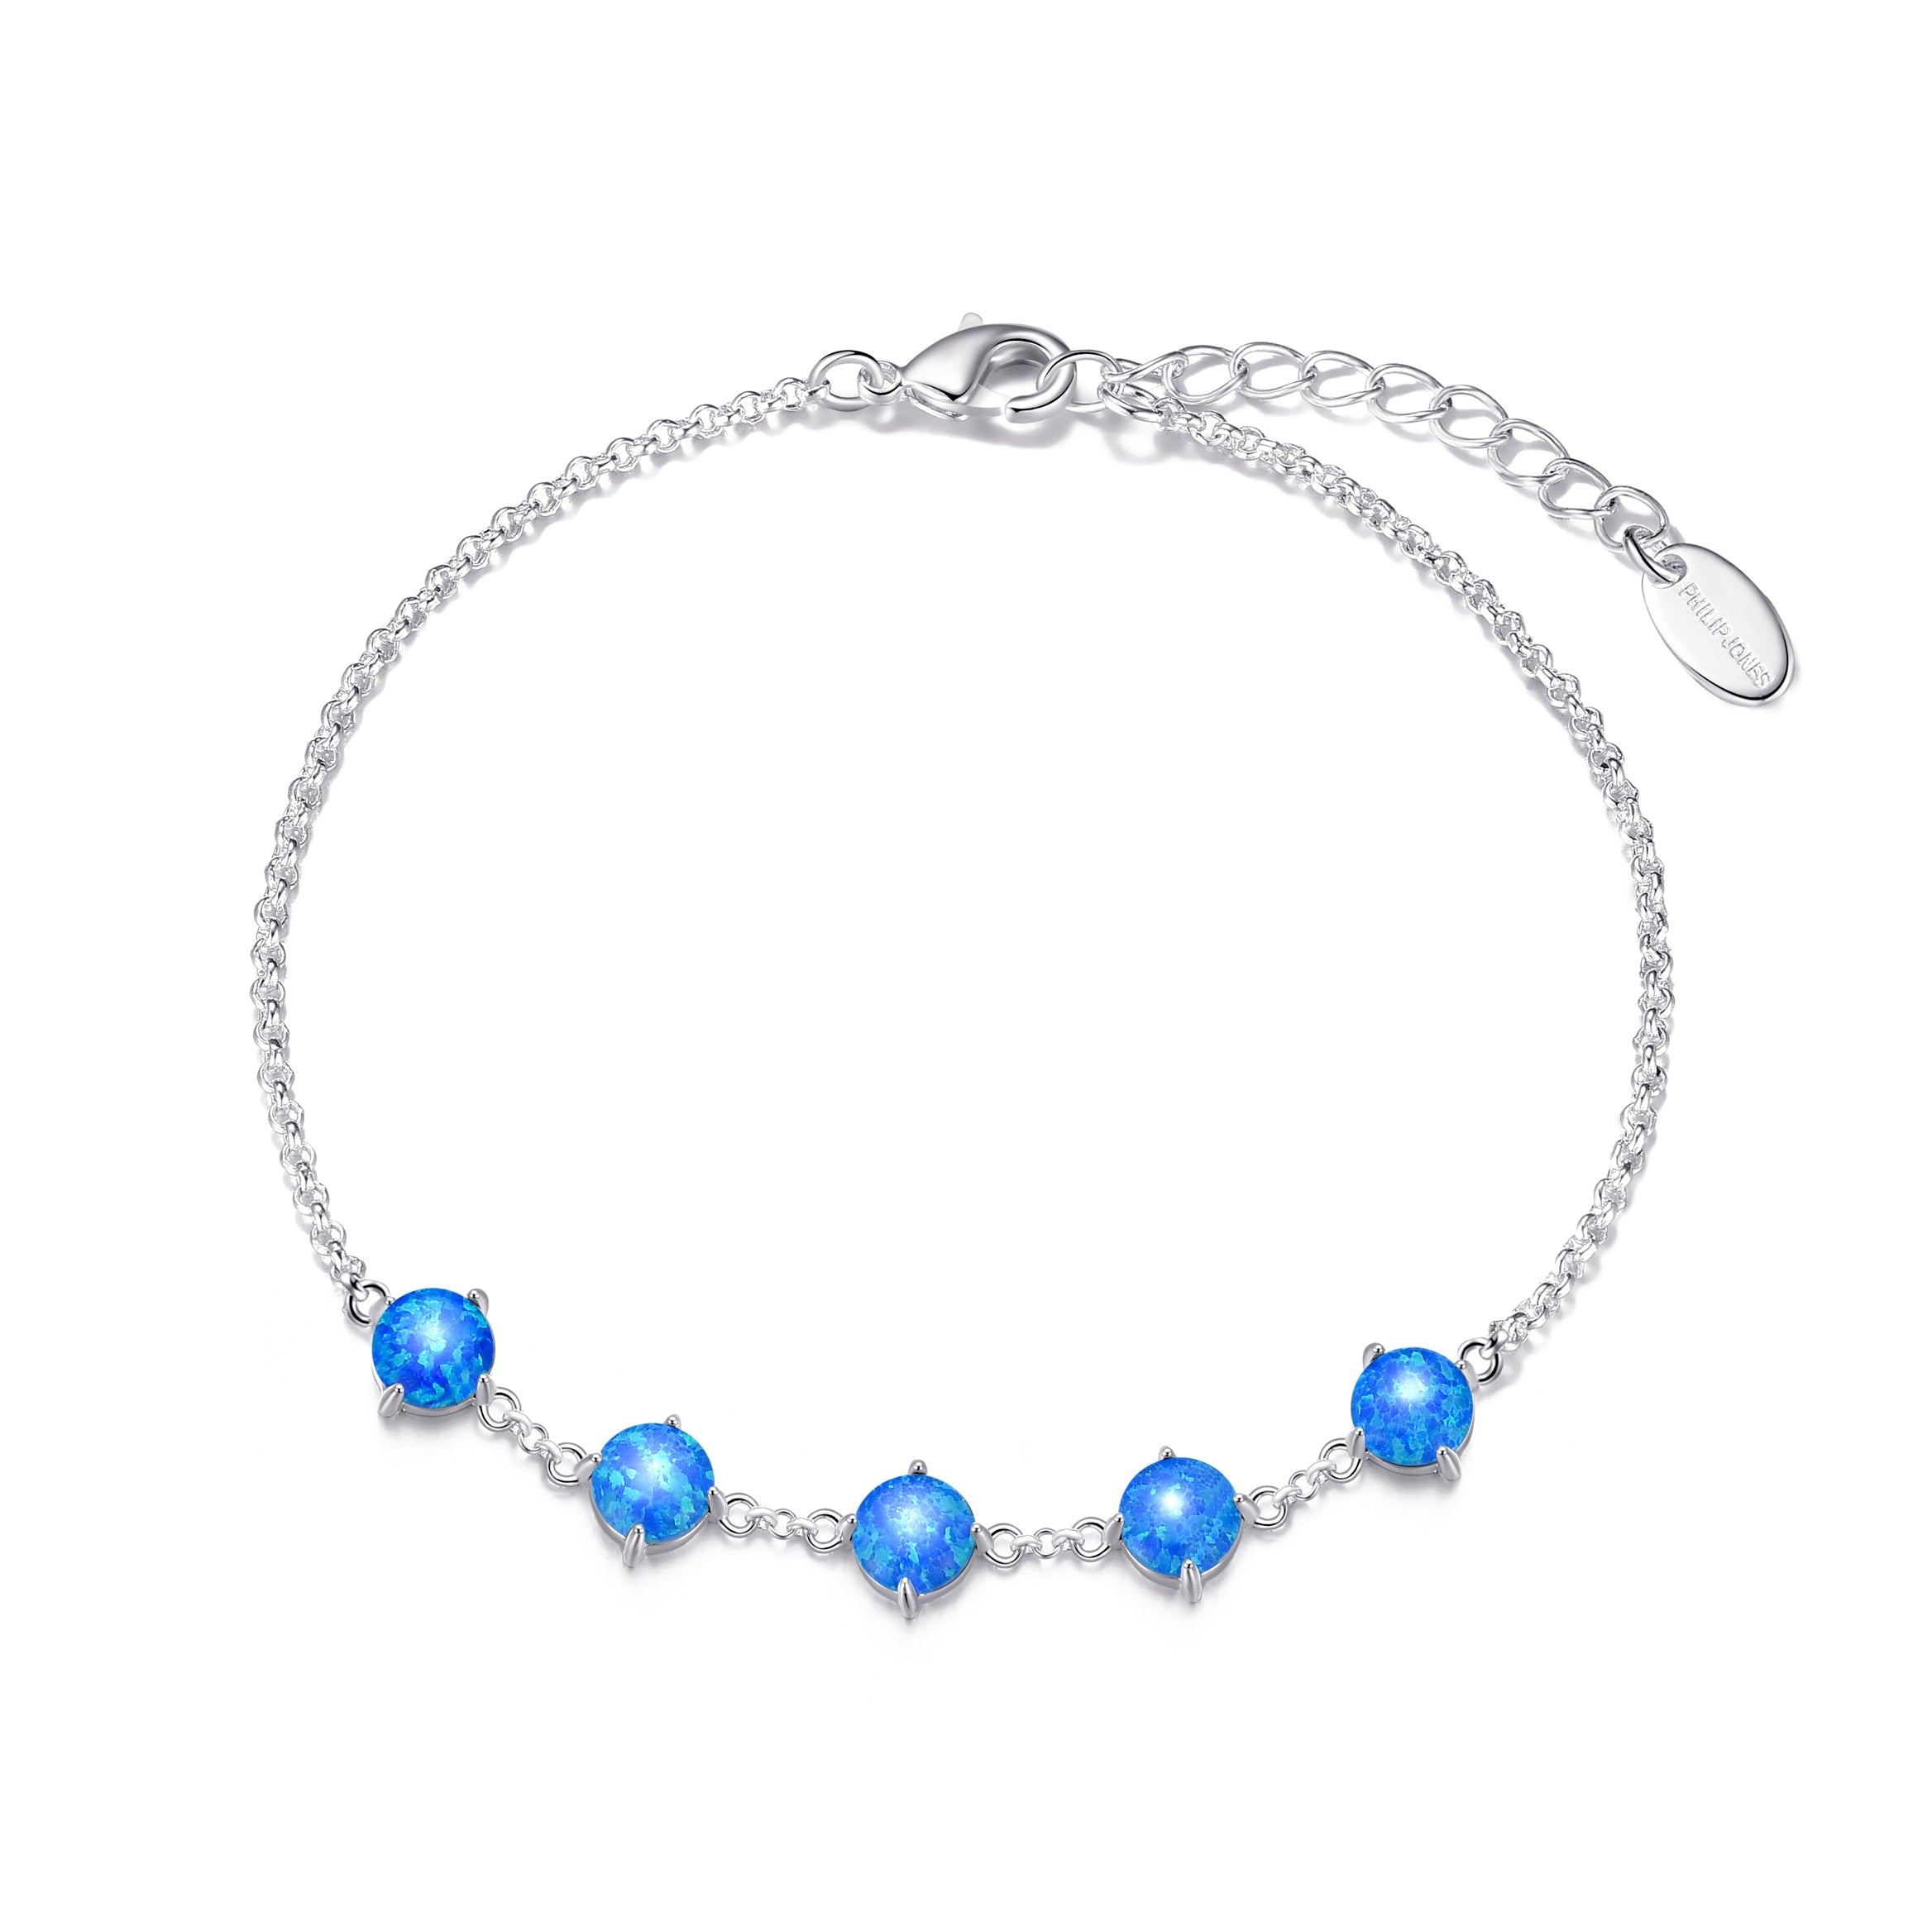 Synthetic Blue Opal Gemstone Bracelet by Philip Jones Jewellery